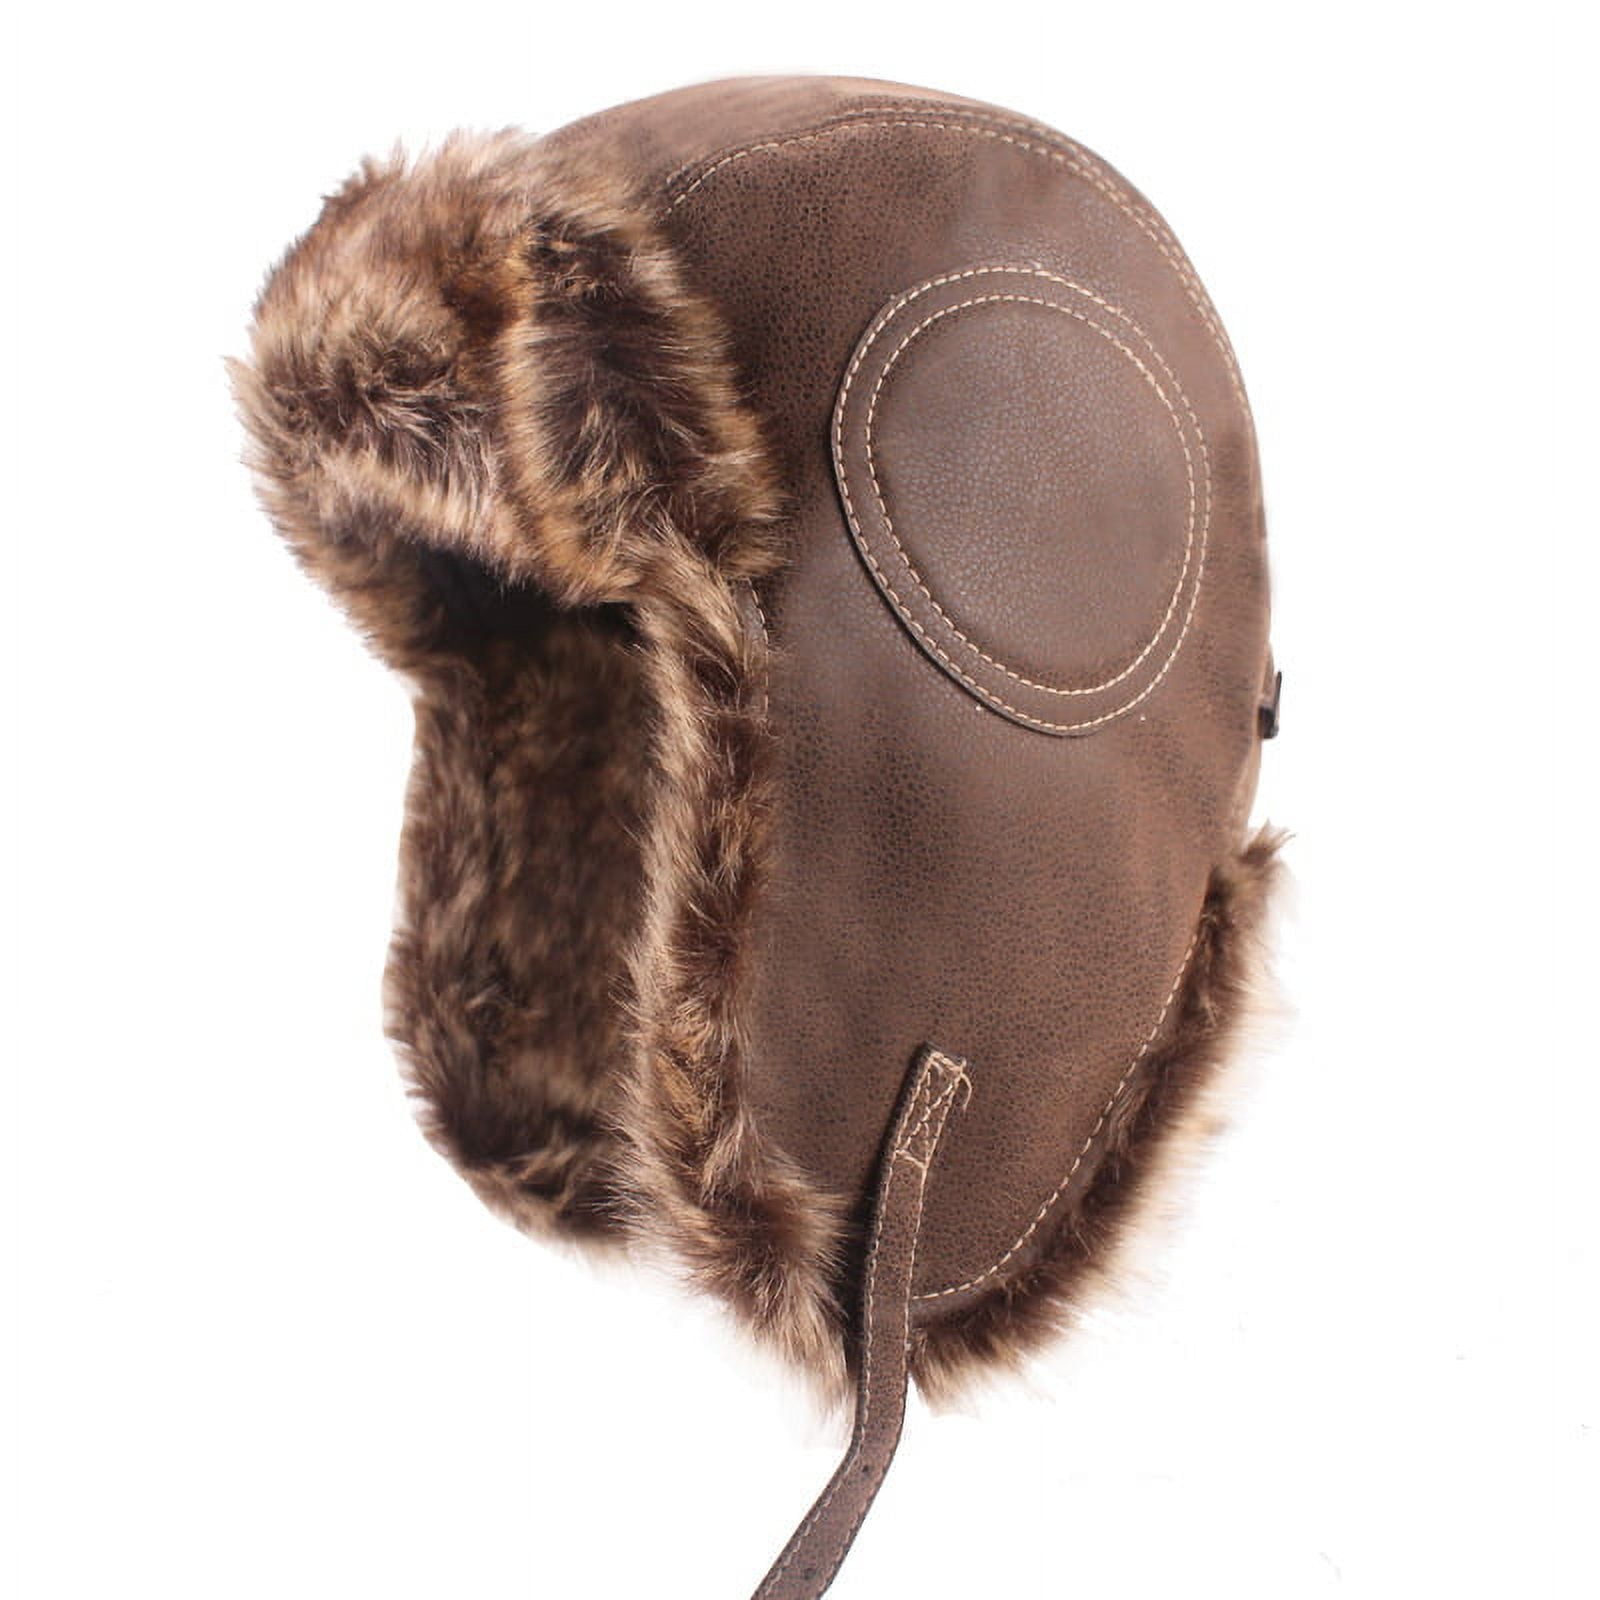  XIXIDIAN Men's Winter Hat Bomber Hat Men Leather Earflap Pilot  Hats Faux Fur Caps Warm Winter Hats Hunting Hat (Color : Black, Size :  55-60cm) : Clothing, Shoes & Jewelry